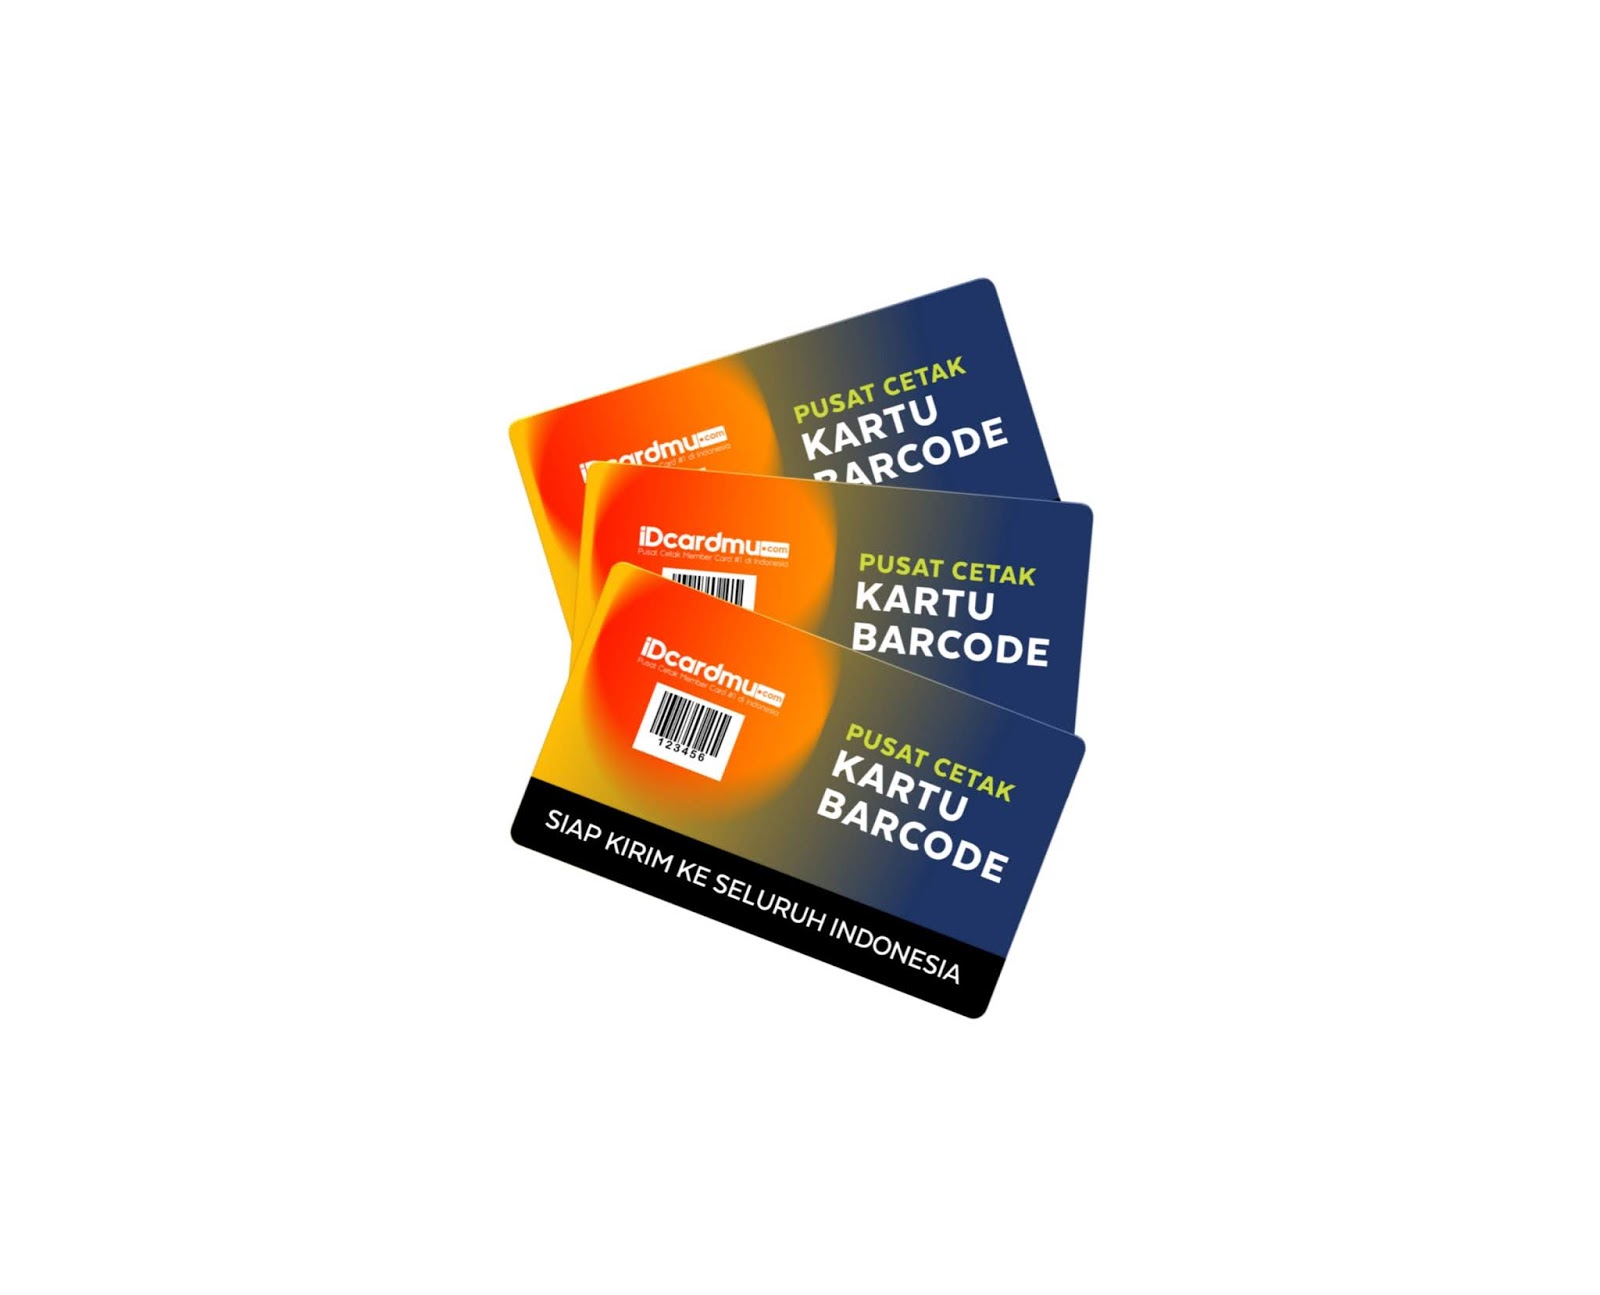 Cetak kartu member barcode murah bahan pvc member card